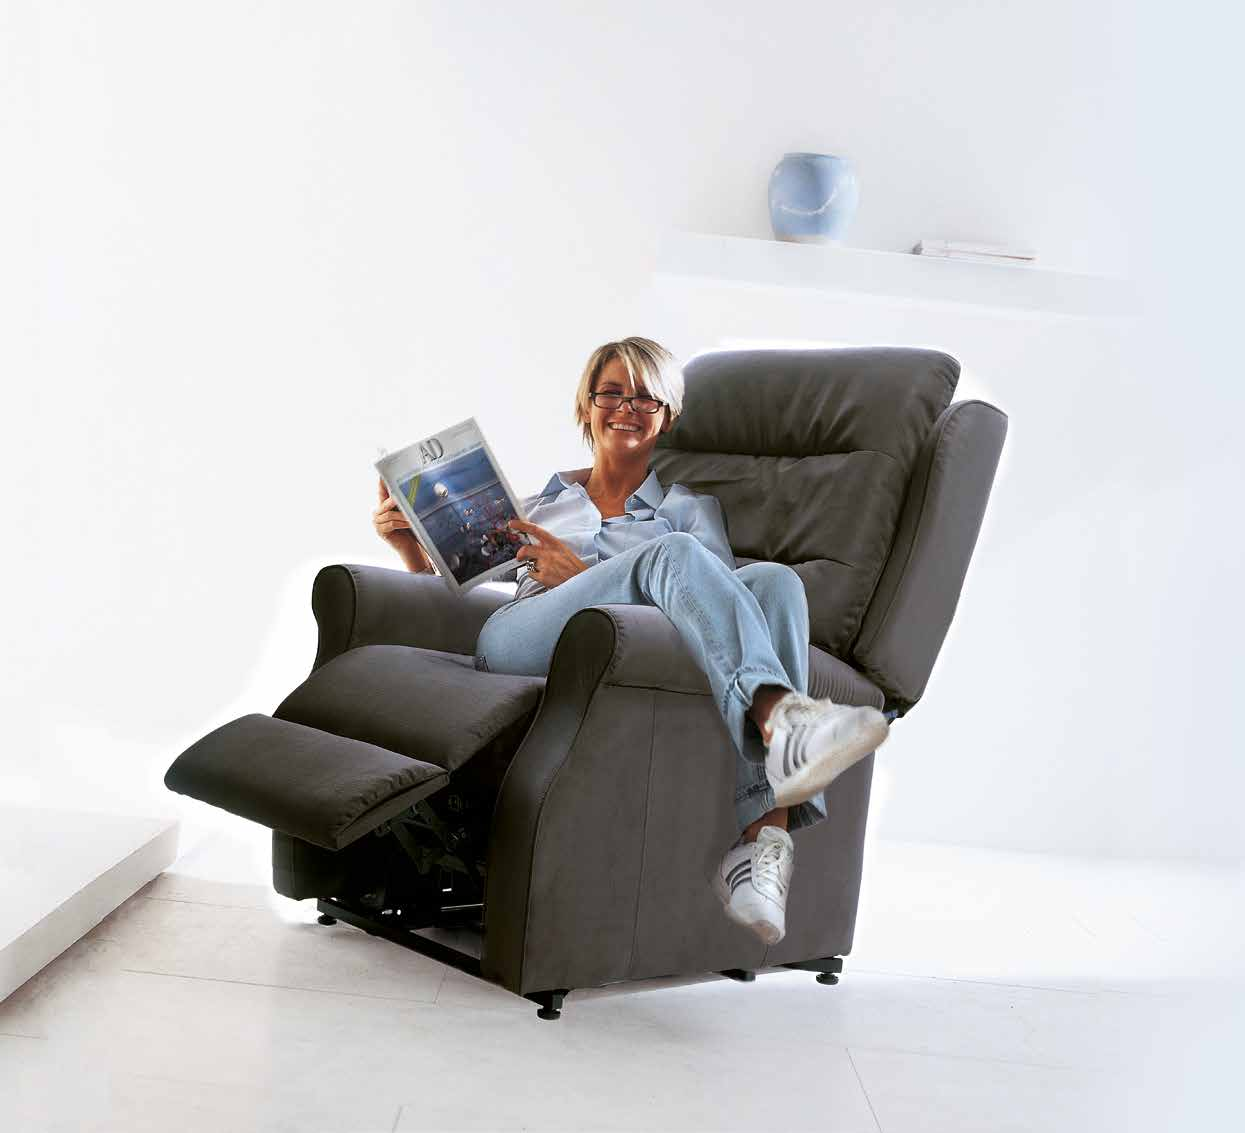 Madison Plus Massimo Comfort Invacare offre un'ampia gamma di soluzioni per chi desidera rilassarsi stando comodamente sdraiato o per chi ha la necessità di alzarsi in piena autonomia.